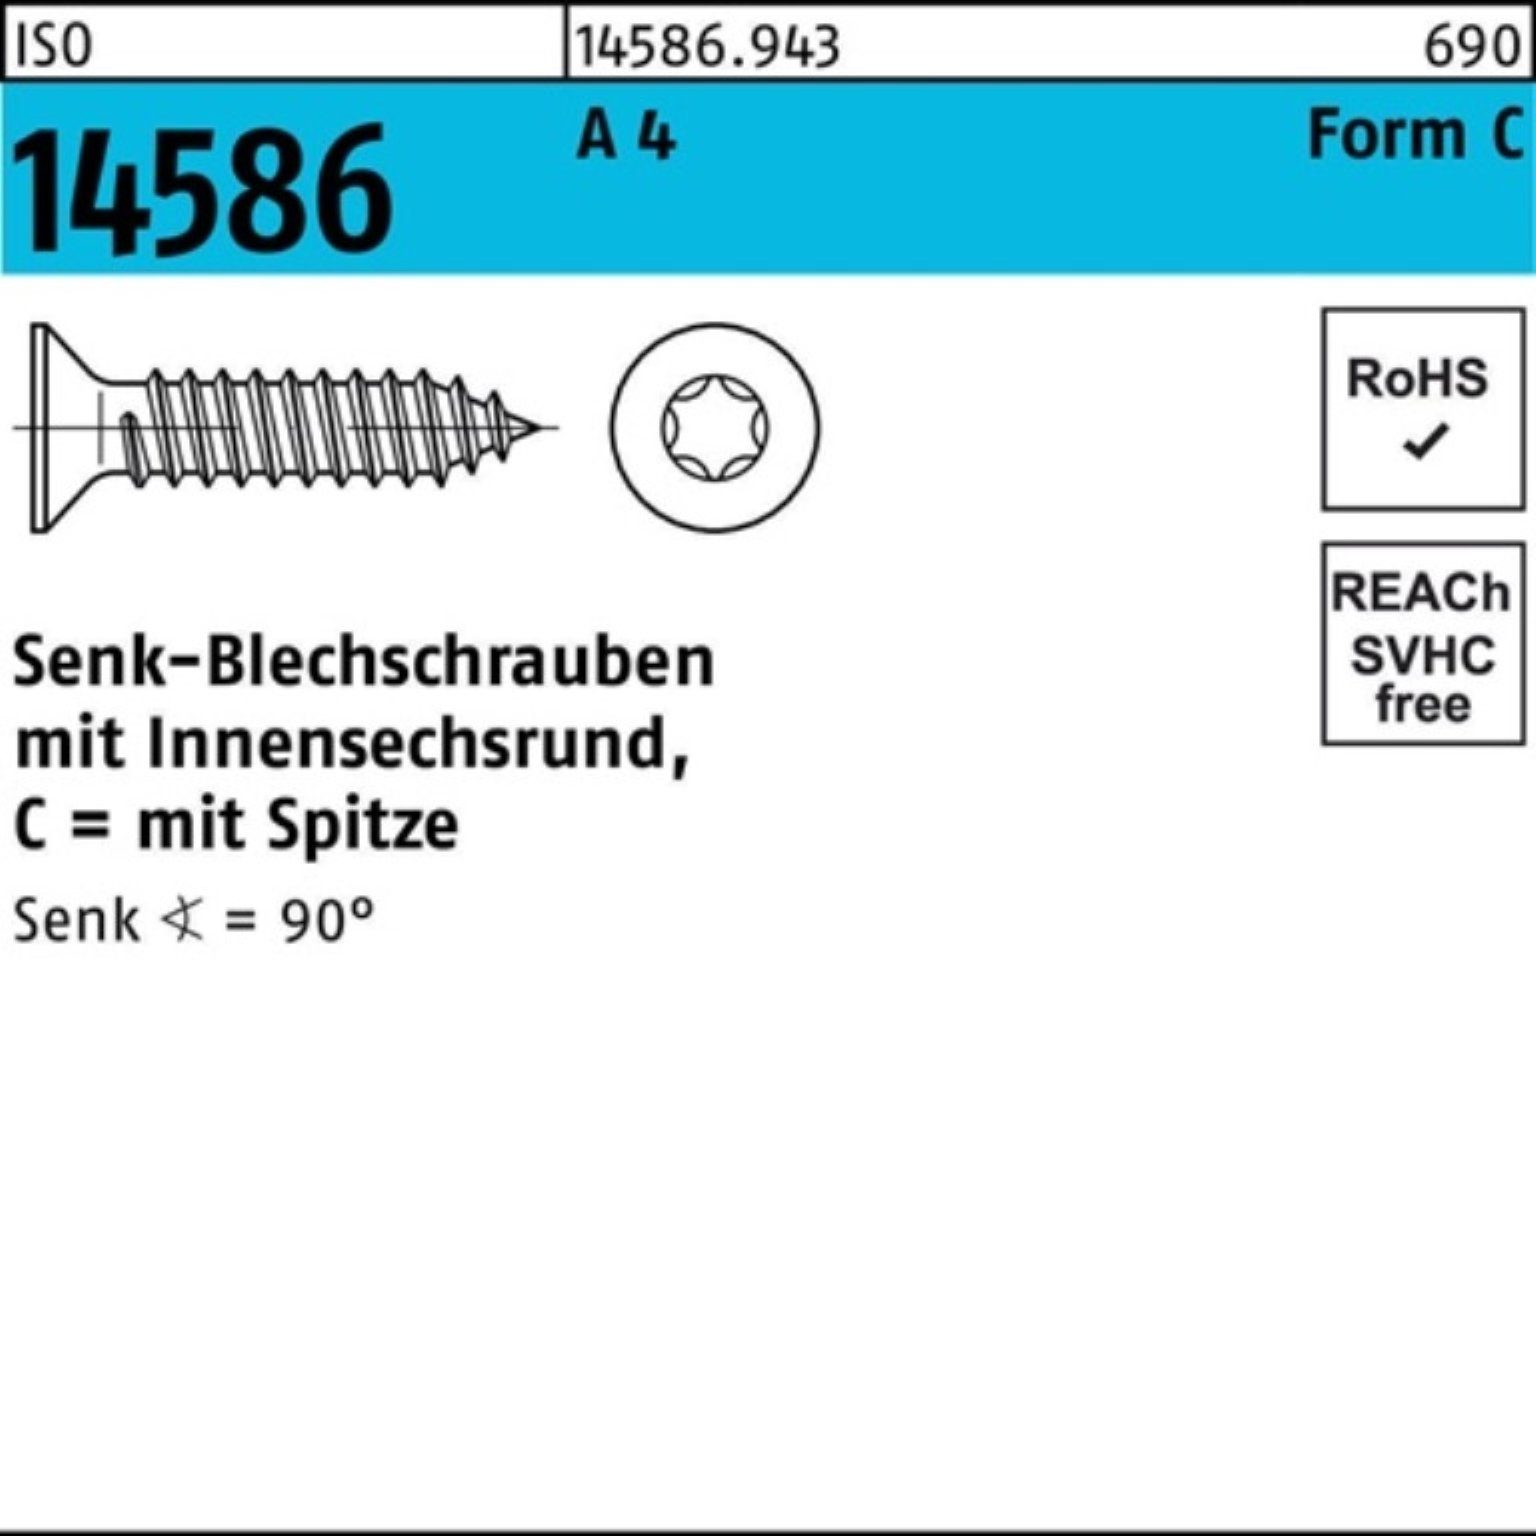 Reyher Schraube 1000er Pack Senkblechschraube ISO 14586 ISR/Spitze 3,5x 13-T15 A 4 100